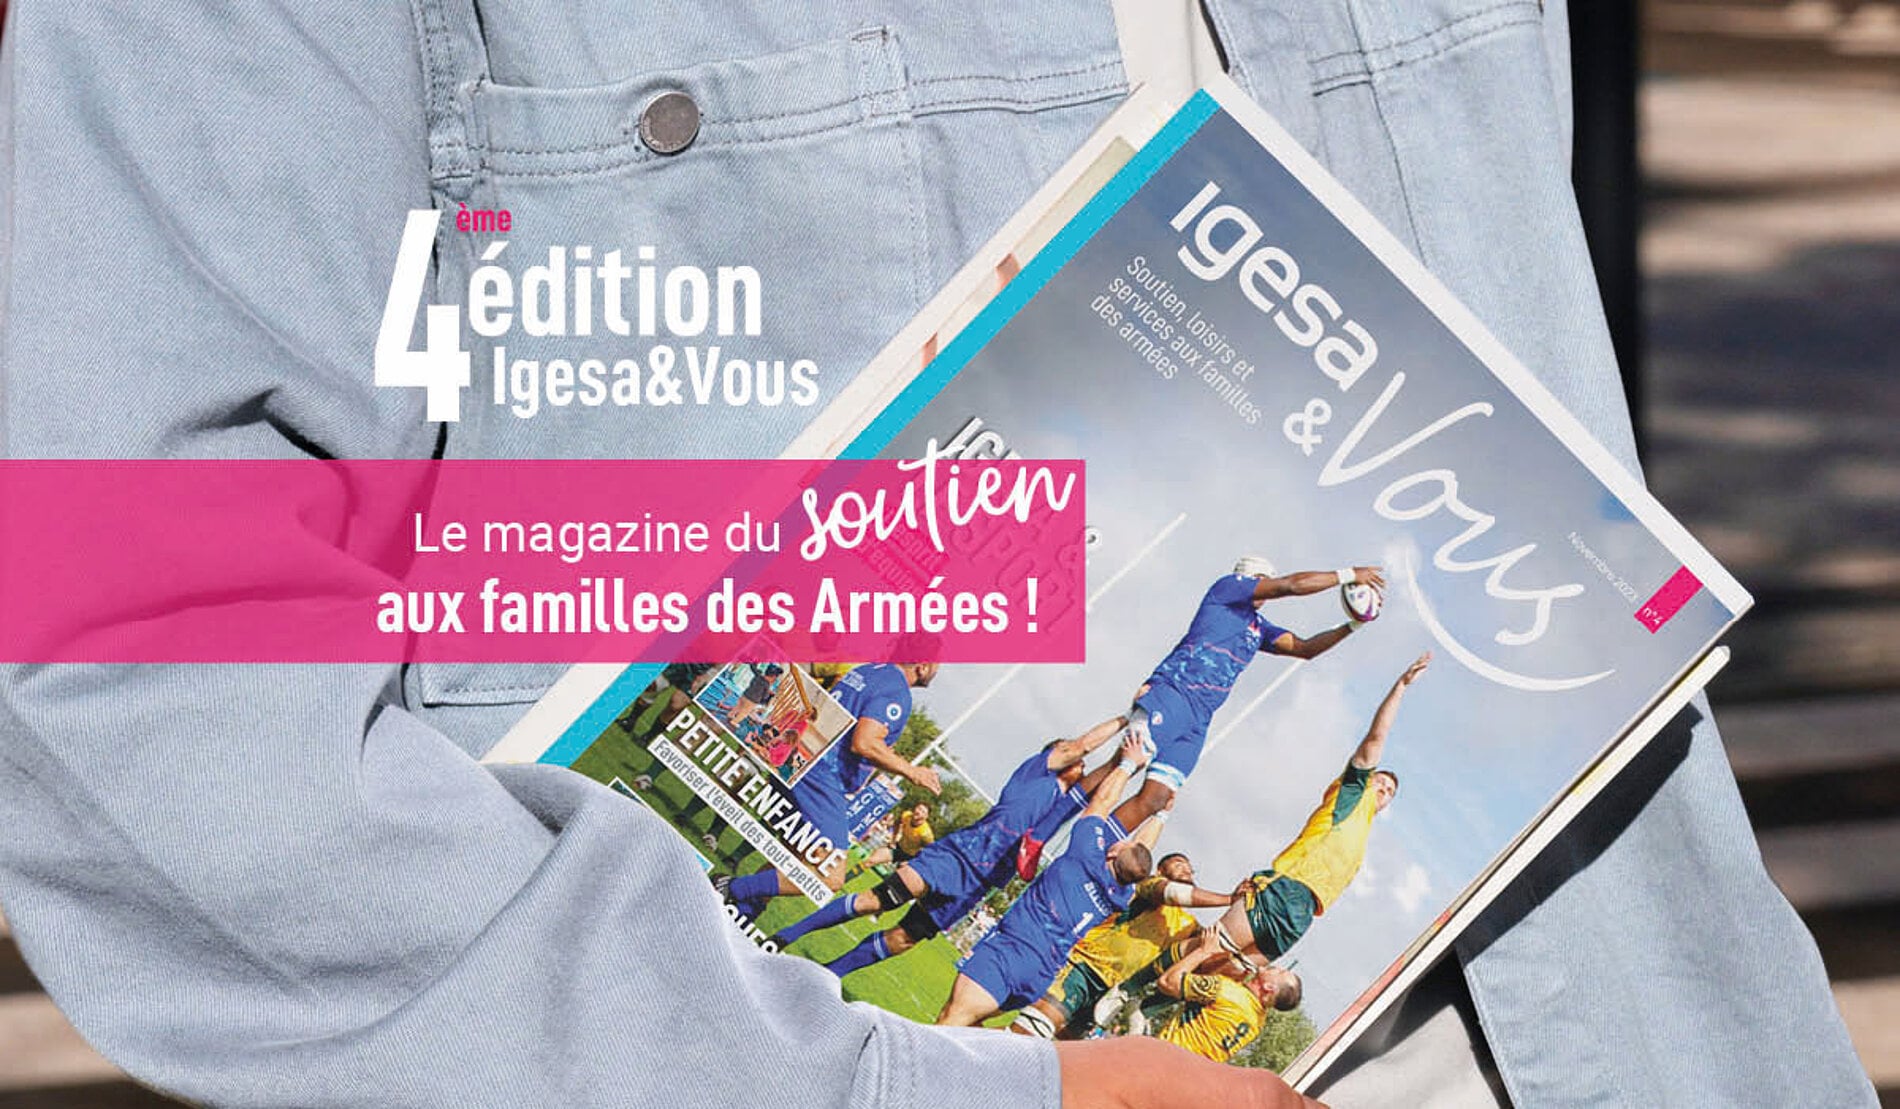 4eme édition Igesa & Vous - LE magazine du soutien aux falmilles des Armées